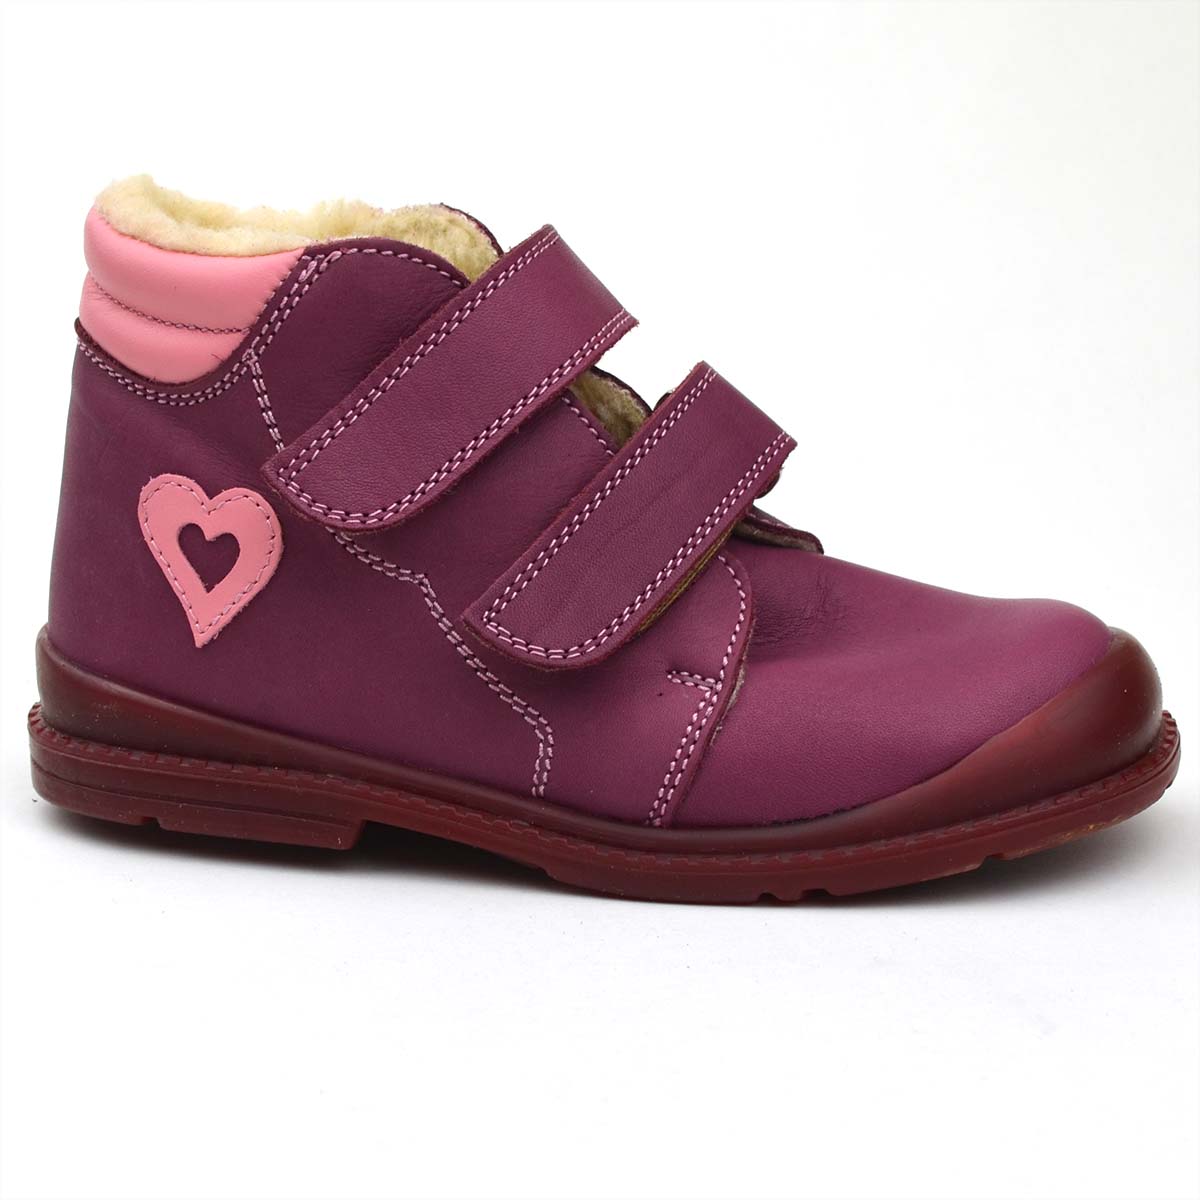 Kislány Flo-910 Salus bélelt cipő bordó színben, szívecskével